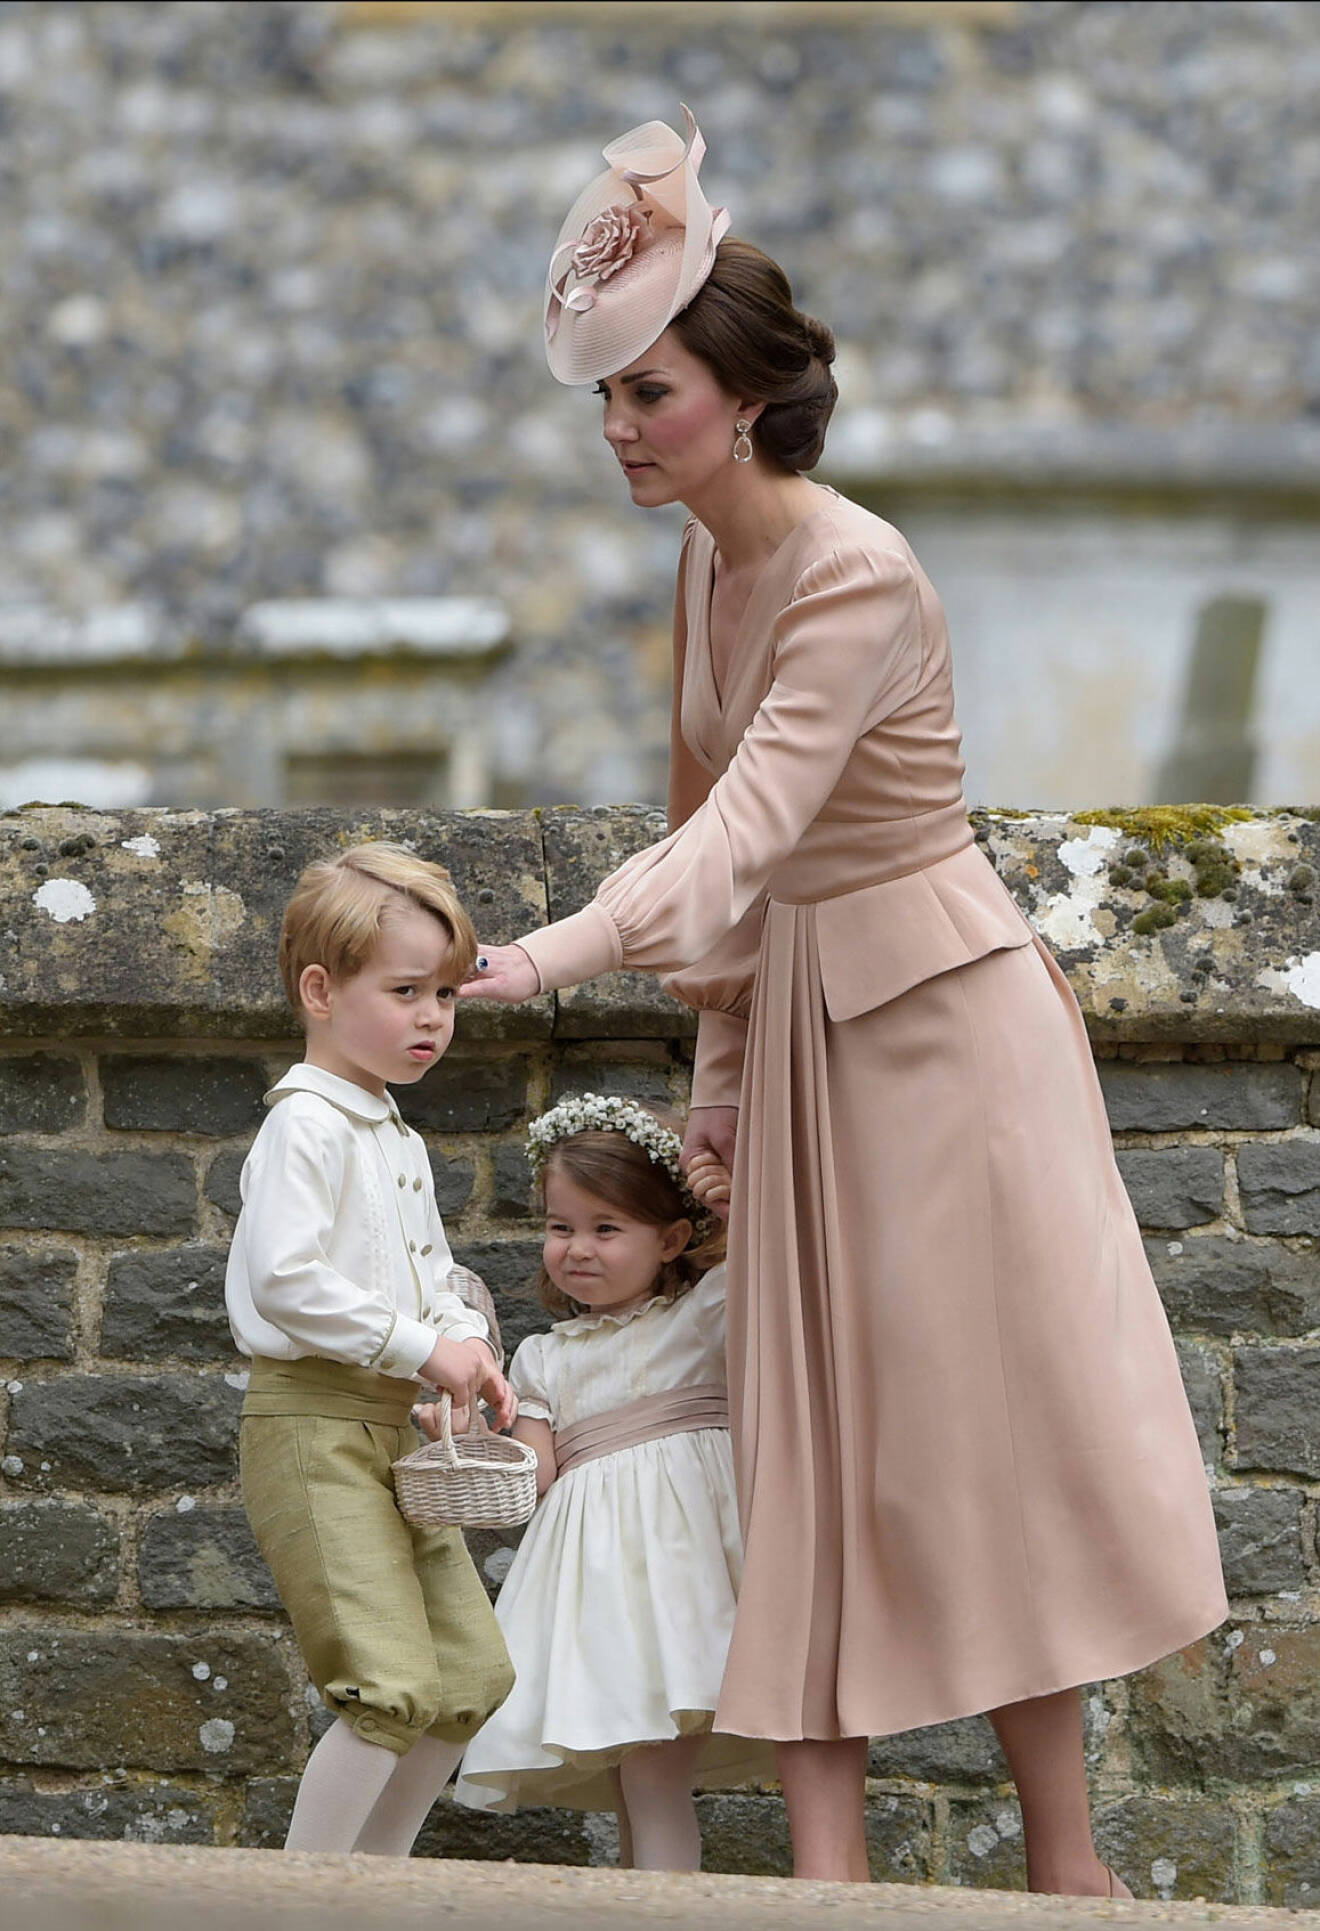 Snart får de dra på sig finkläderna och gå på bröllop igen. Här syns Kate, George och lilla Charlotte på armens moster Pippa Middletons bröllop 20 maj 2017. Nästan exakt på årsdagen, 21 maj 2018, gifter sig nu Williams bror Harry.